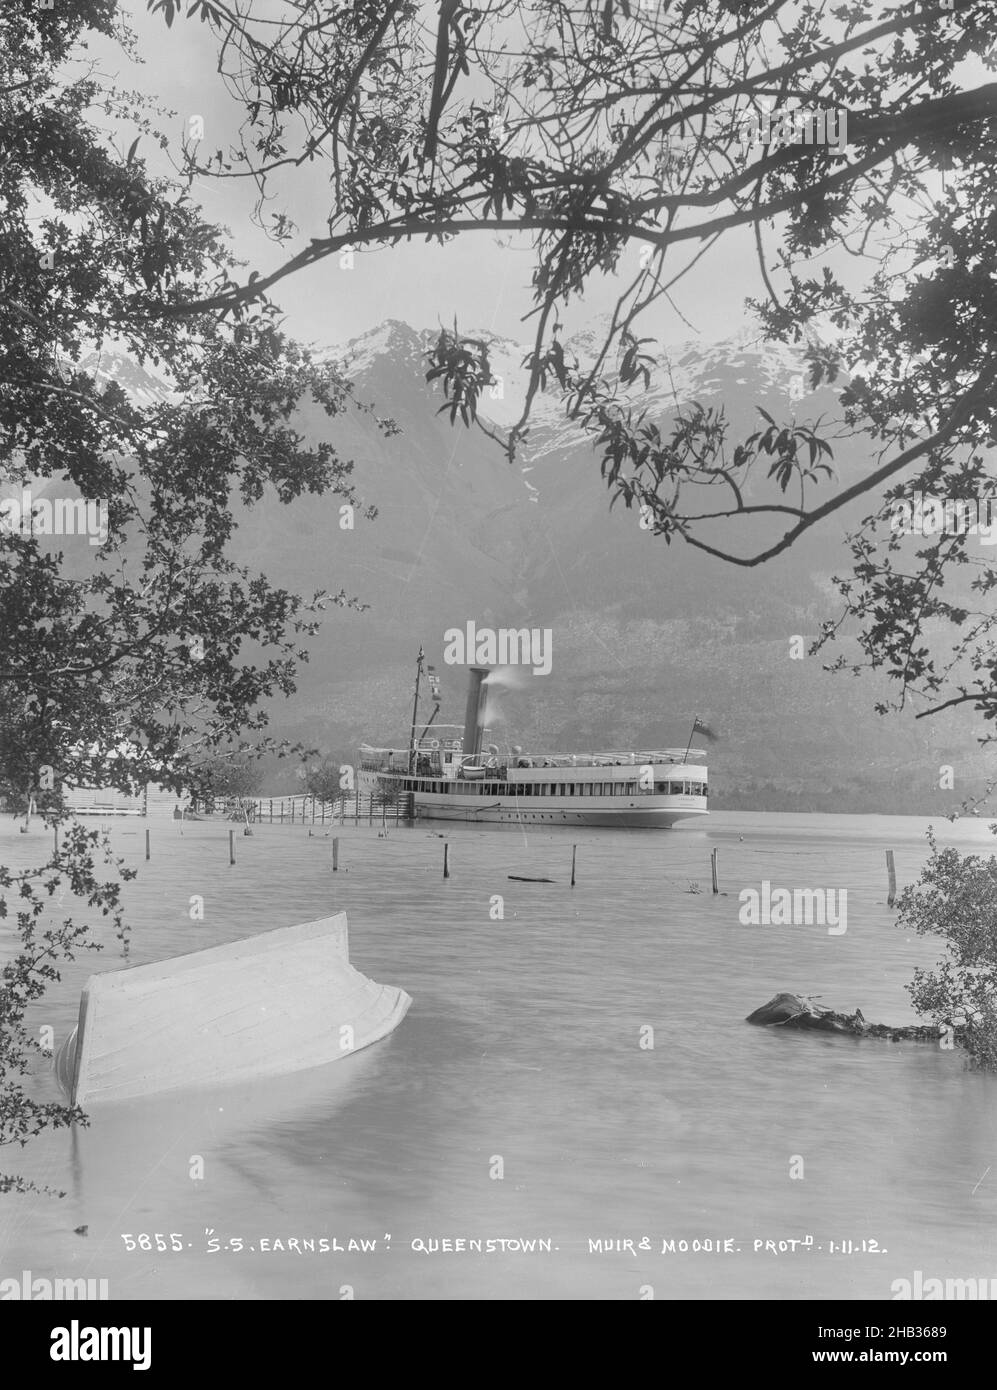 S.S. Earnslaw, Queenstown, Muir & Moodie Studio, Fotostudio, um 1912, Neuseeland, Gelatine-Trockenteller-Verfahren, Dampfboot auf Wasseroberfläche mit einem scheinbar kentergroßen Ruderboot im Vordergrund Stockfoto